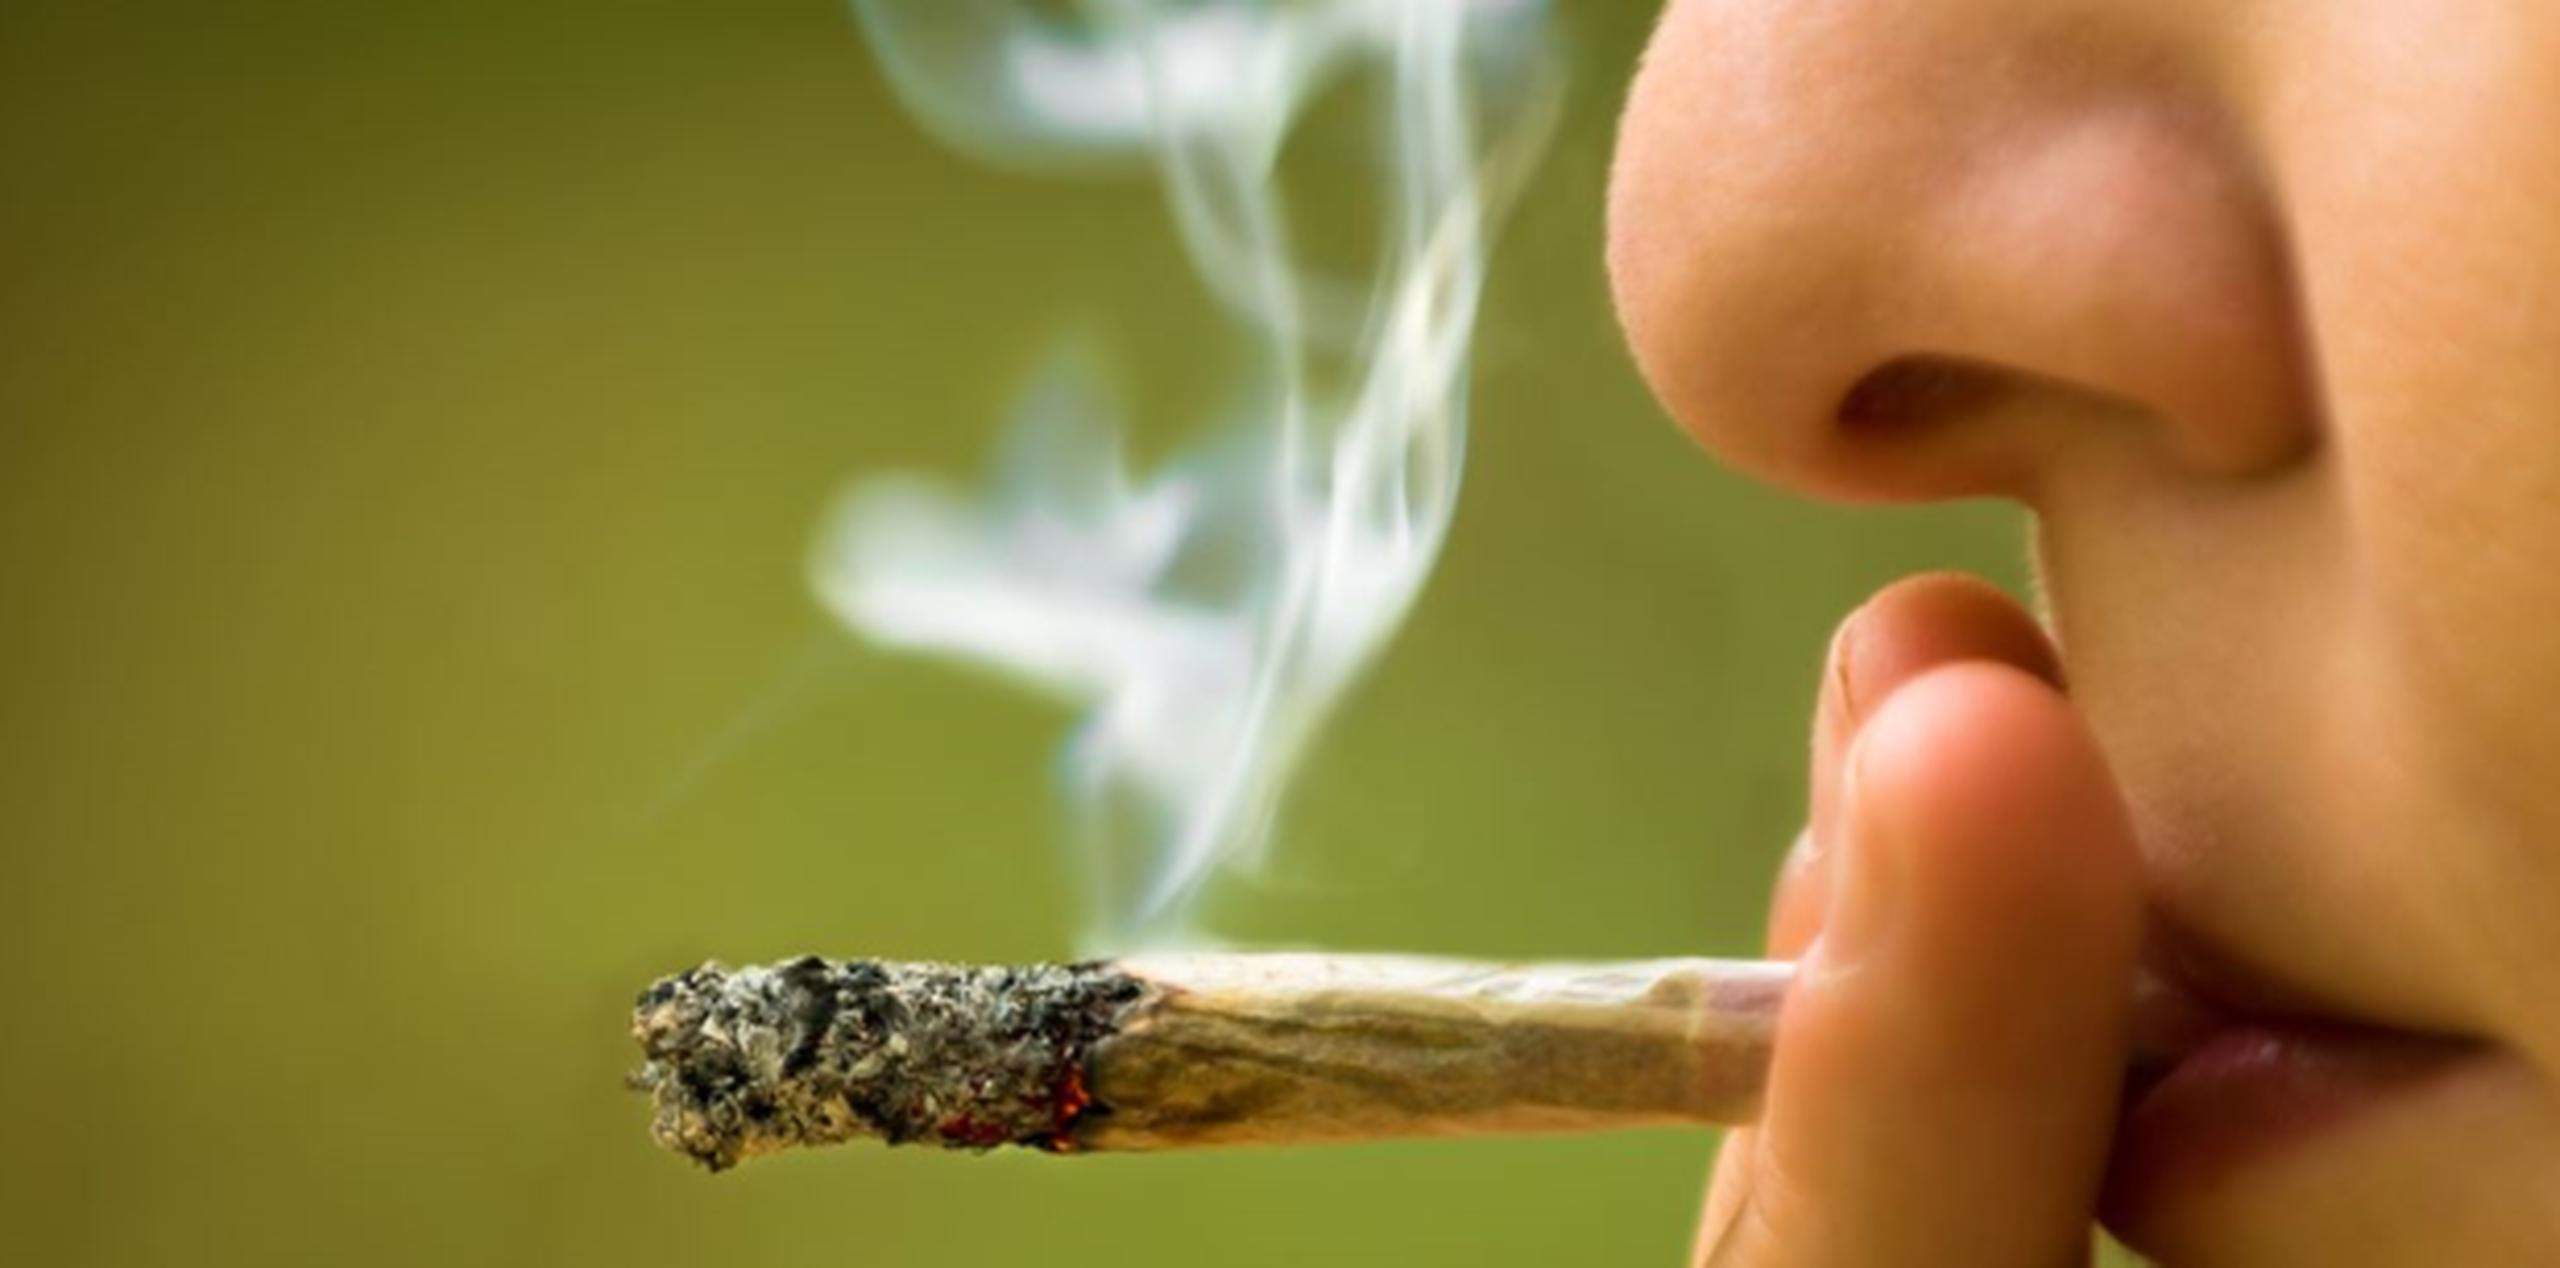 La adolescente estaba intoxicada con marihuana sintética, un producto cuyos ingredientes químicos diversos son una caja nociva de sorpresas para el cuerpo humano. (Thinkstock)